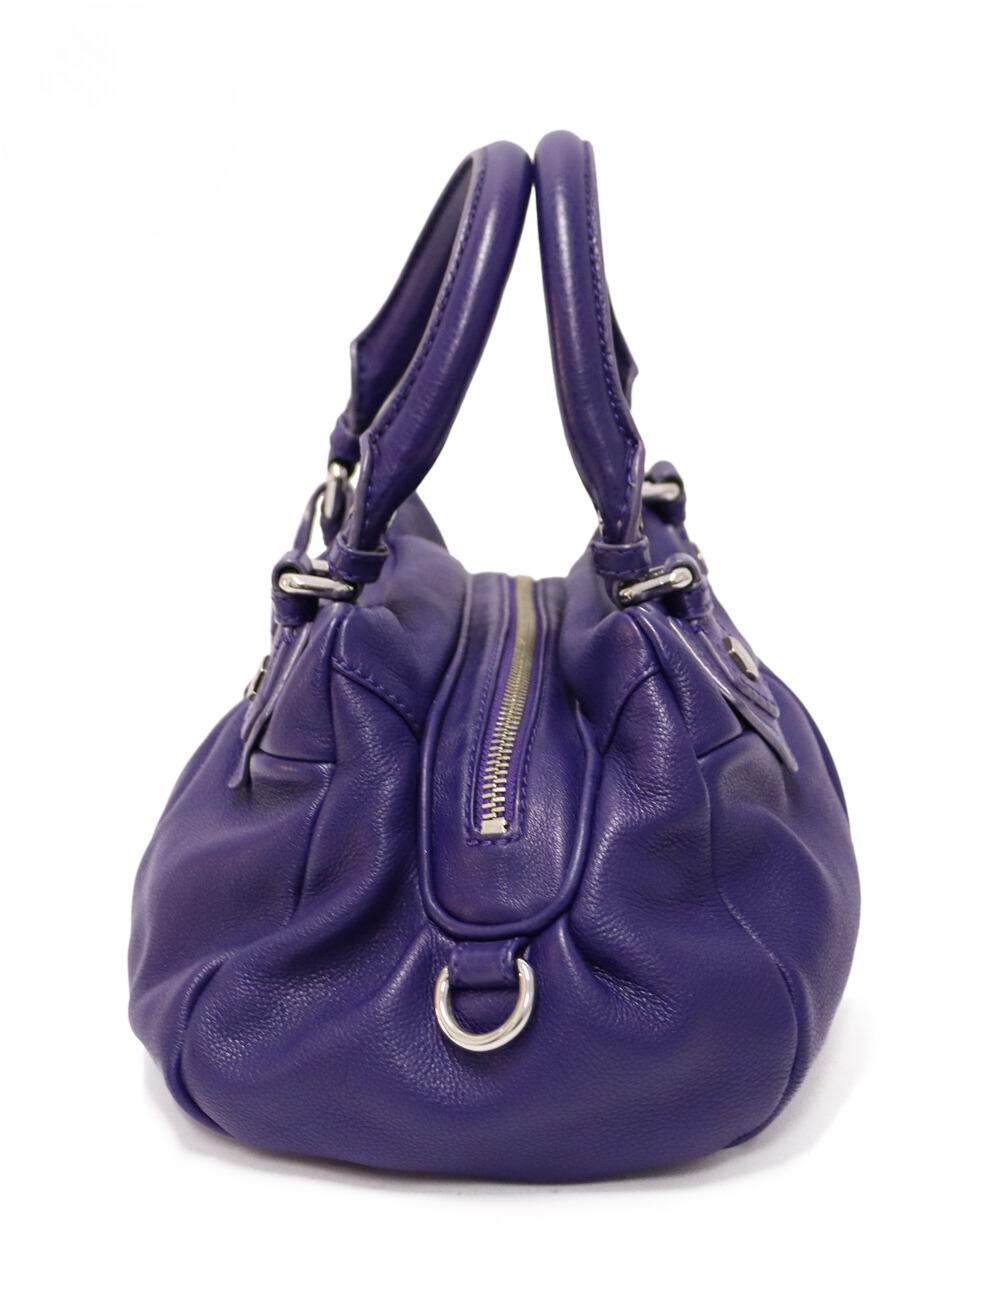 Marc by Marc Jacobs Purple Leather Classic Q Baby Groovee Bag, comporte deux anses supérieures, une bandoulière réglable et l'étiquette signature classique.

MATERIAL : Cuir.
Quincaillerie : Argent.
Hauteur : 19cm
Largeur : 31cm
Profondeur :